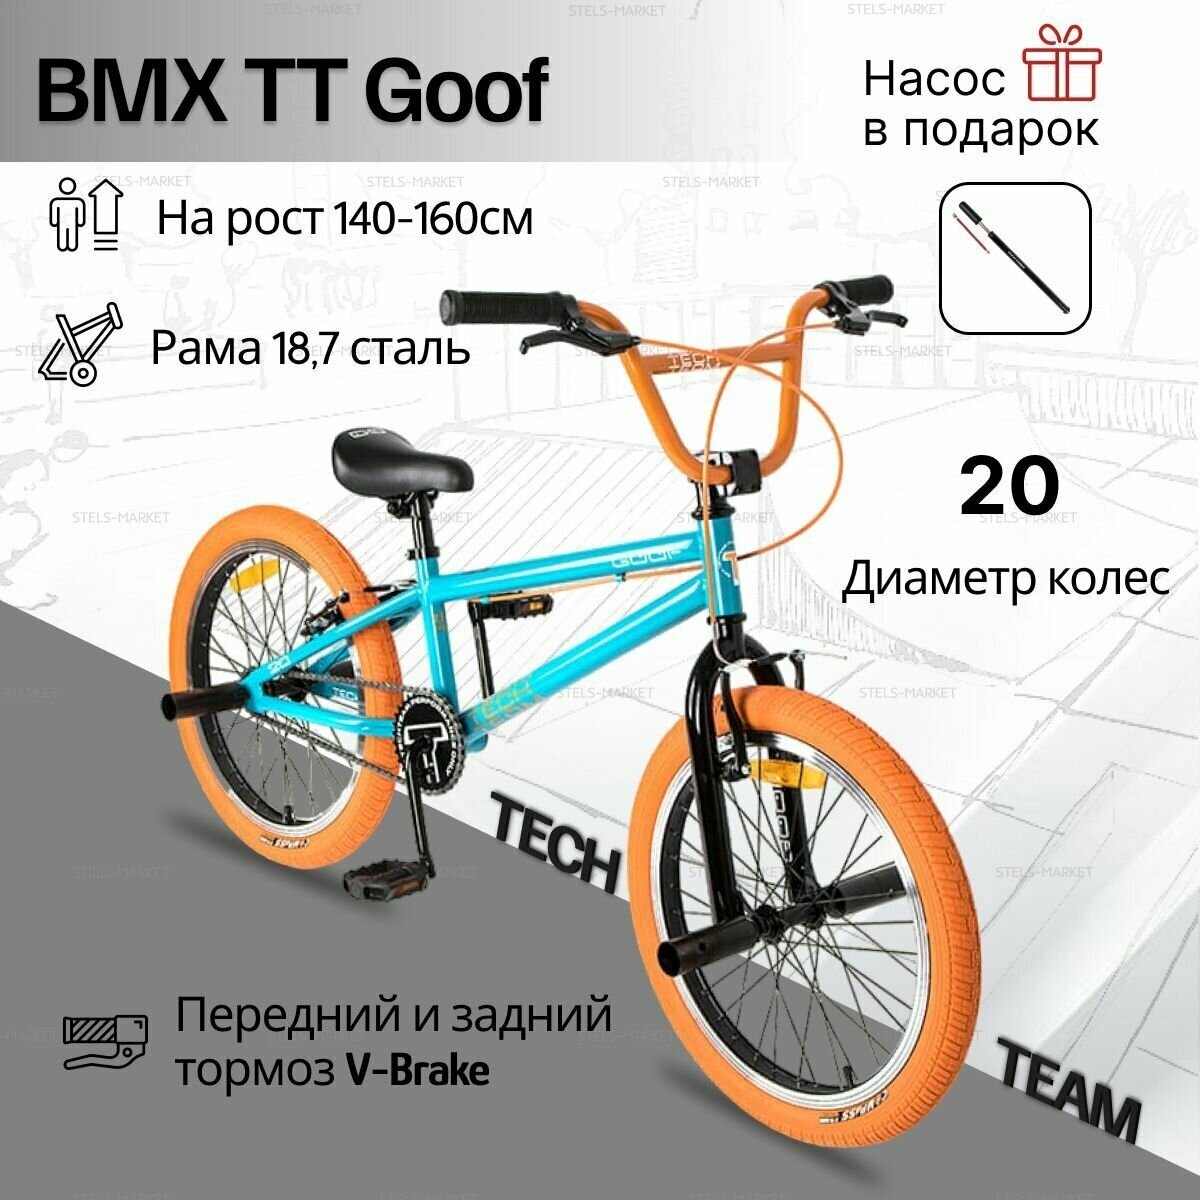 Велосипед Tech Team BMX GOOF 20" бирюзовый